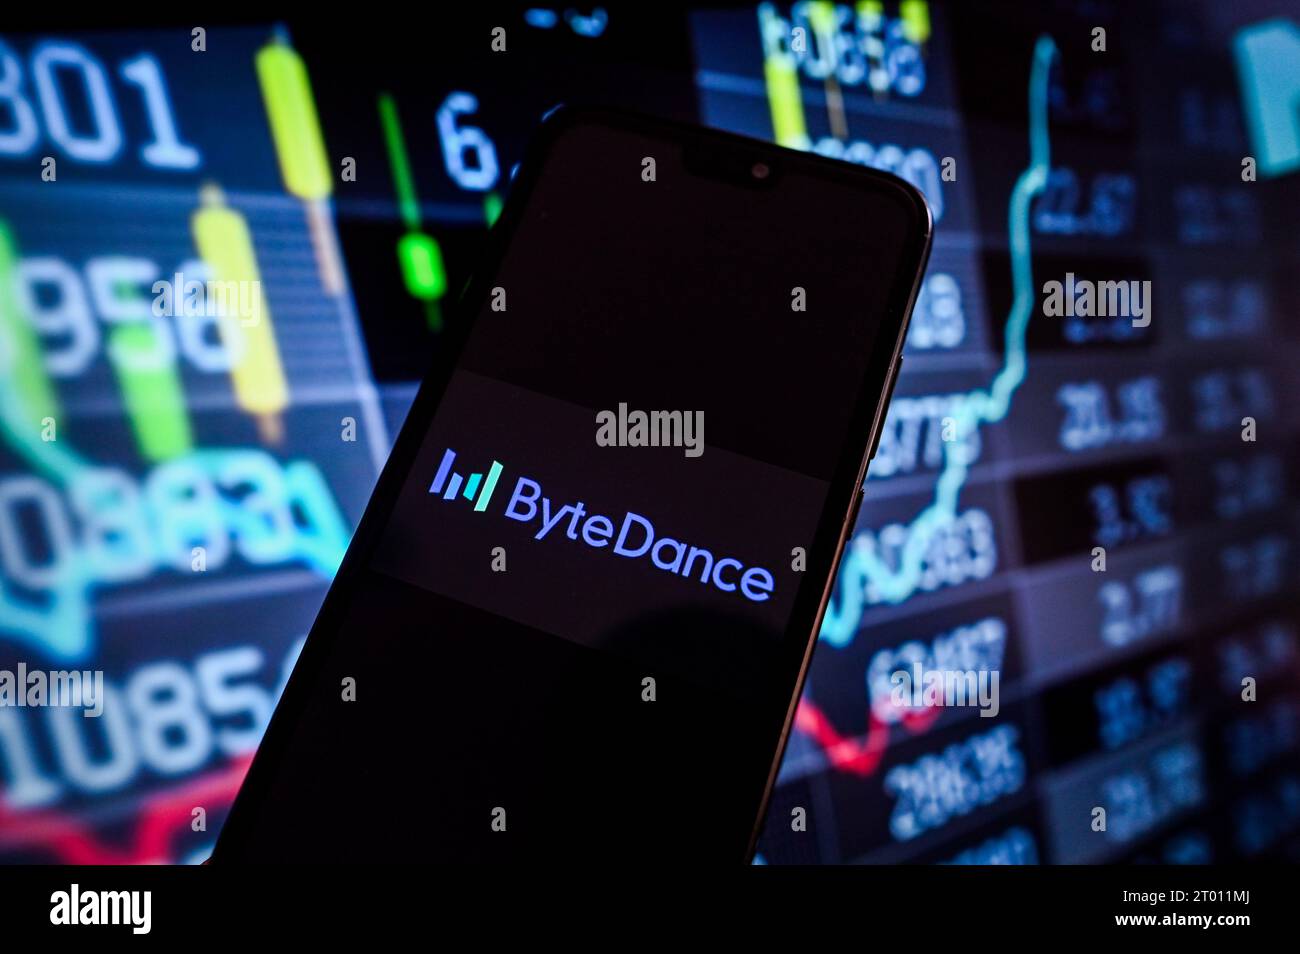 In dieser Fotoabbildung wird auf einem Smartphone ein Byte Dance-Logo mit Aktienmarktanteilen im Hintergrund angezeigt. Stockfoto